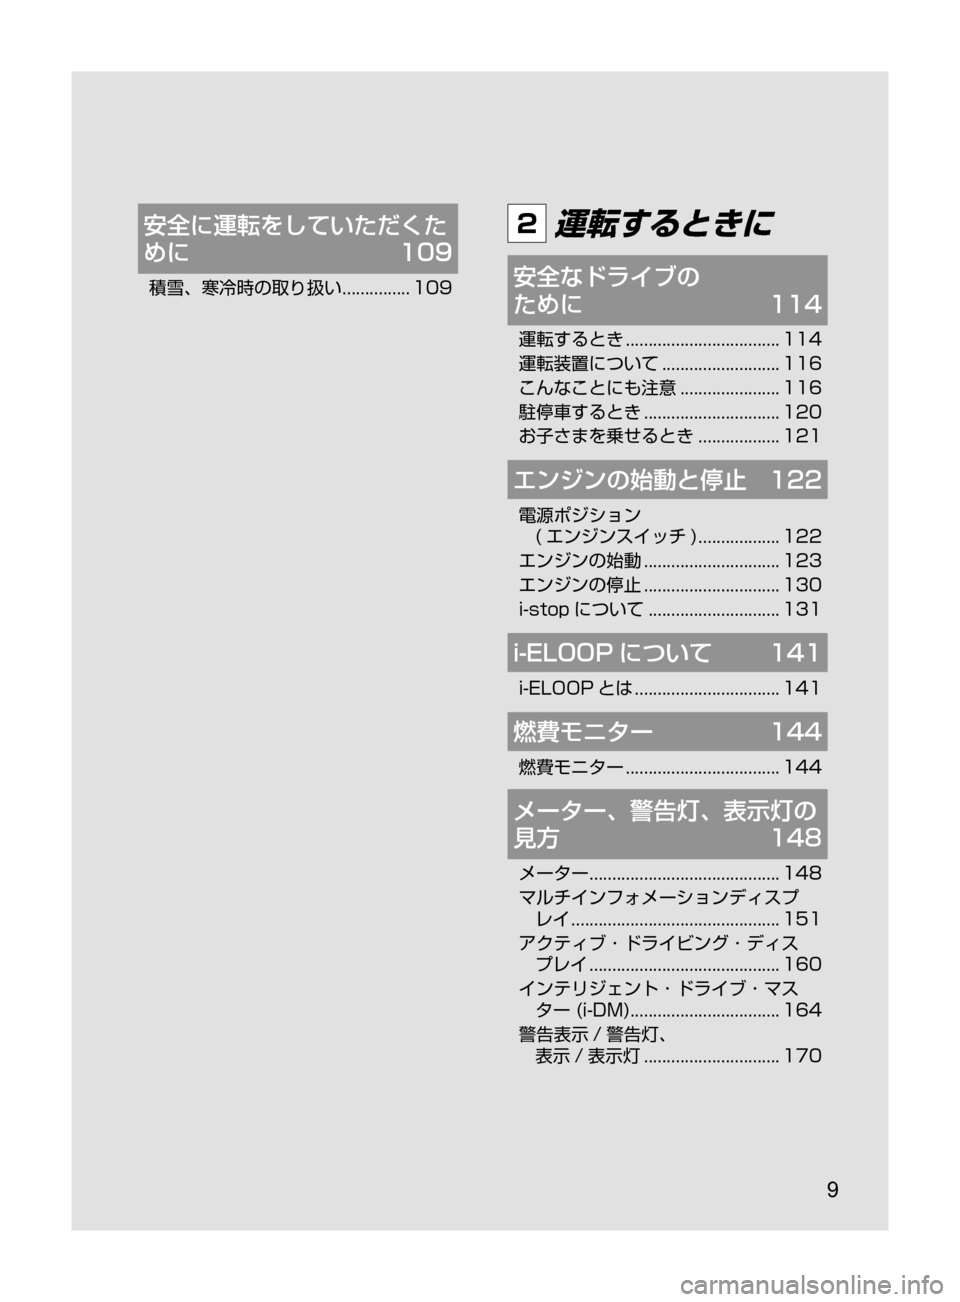 MAZDA MODEL ATENZA 2016  アテンザ｜取扱説明書 (in Japanese) 9
安全に運転をしていただくた
めに	109
積雪､ 寒冷時の取り扱い﻿﻿............... 109
2 運転するときに
安全なドライブの	
ために	114
運転するとき﻿